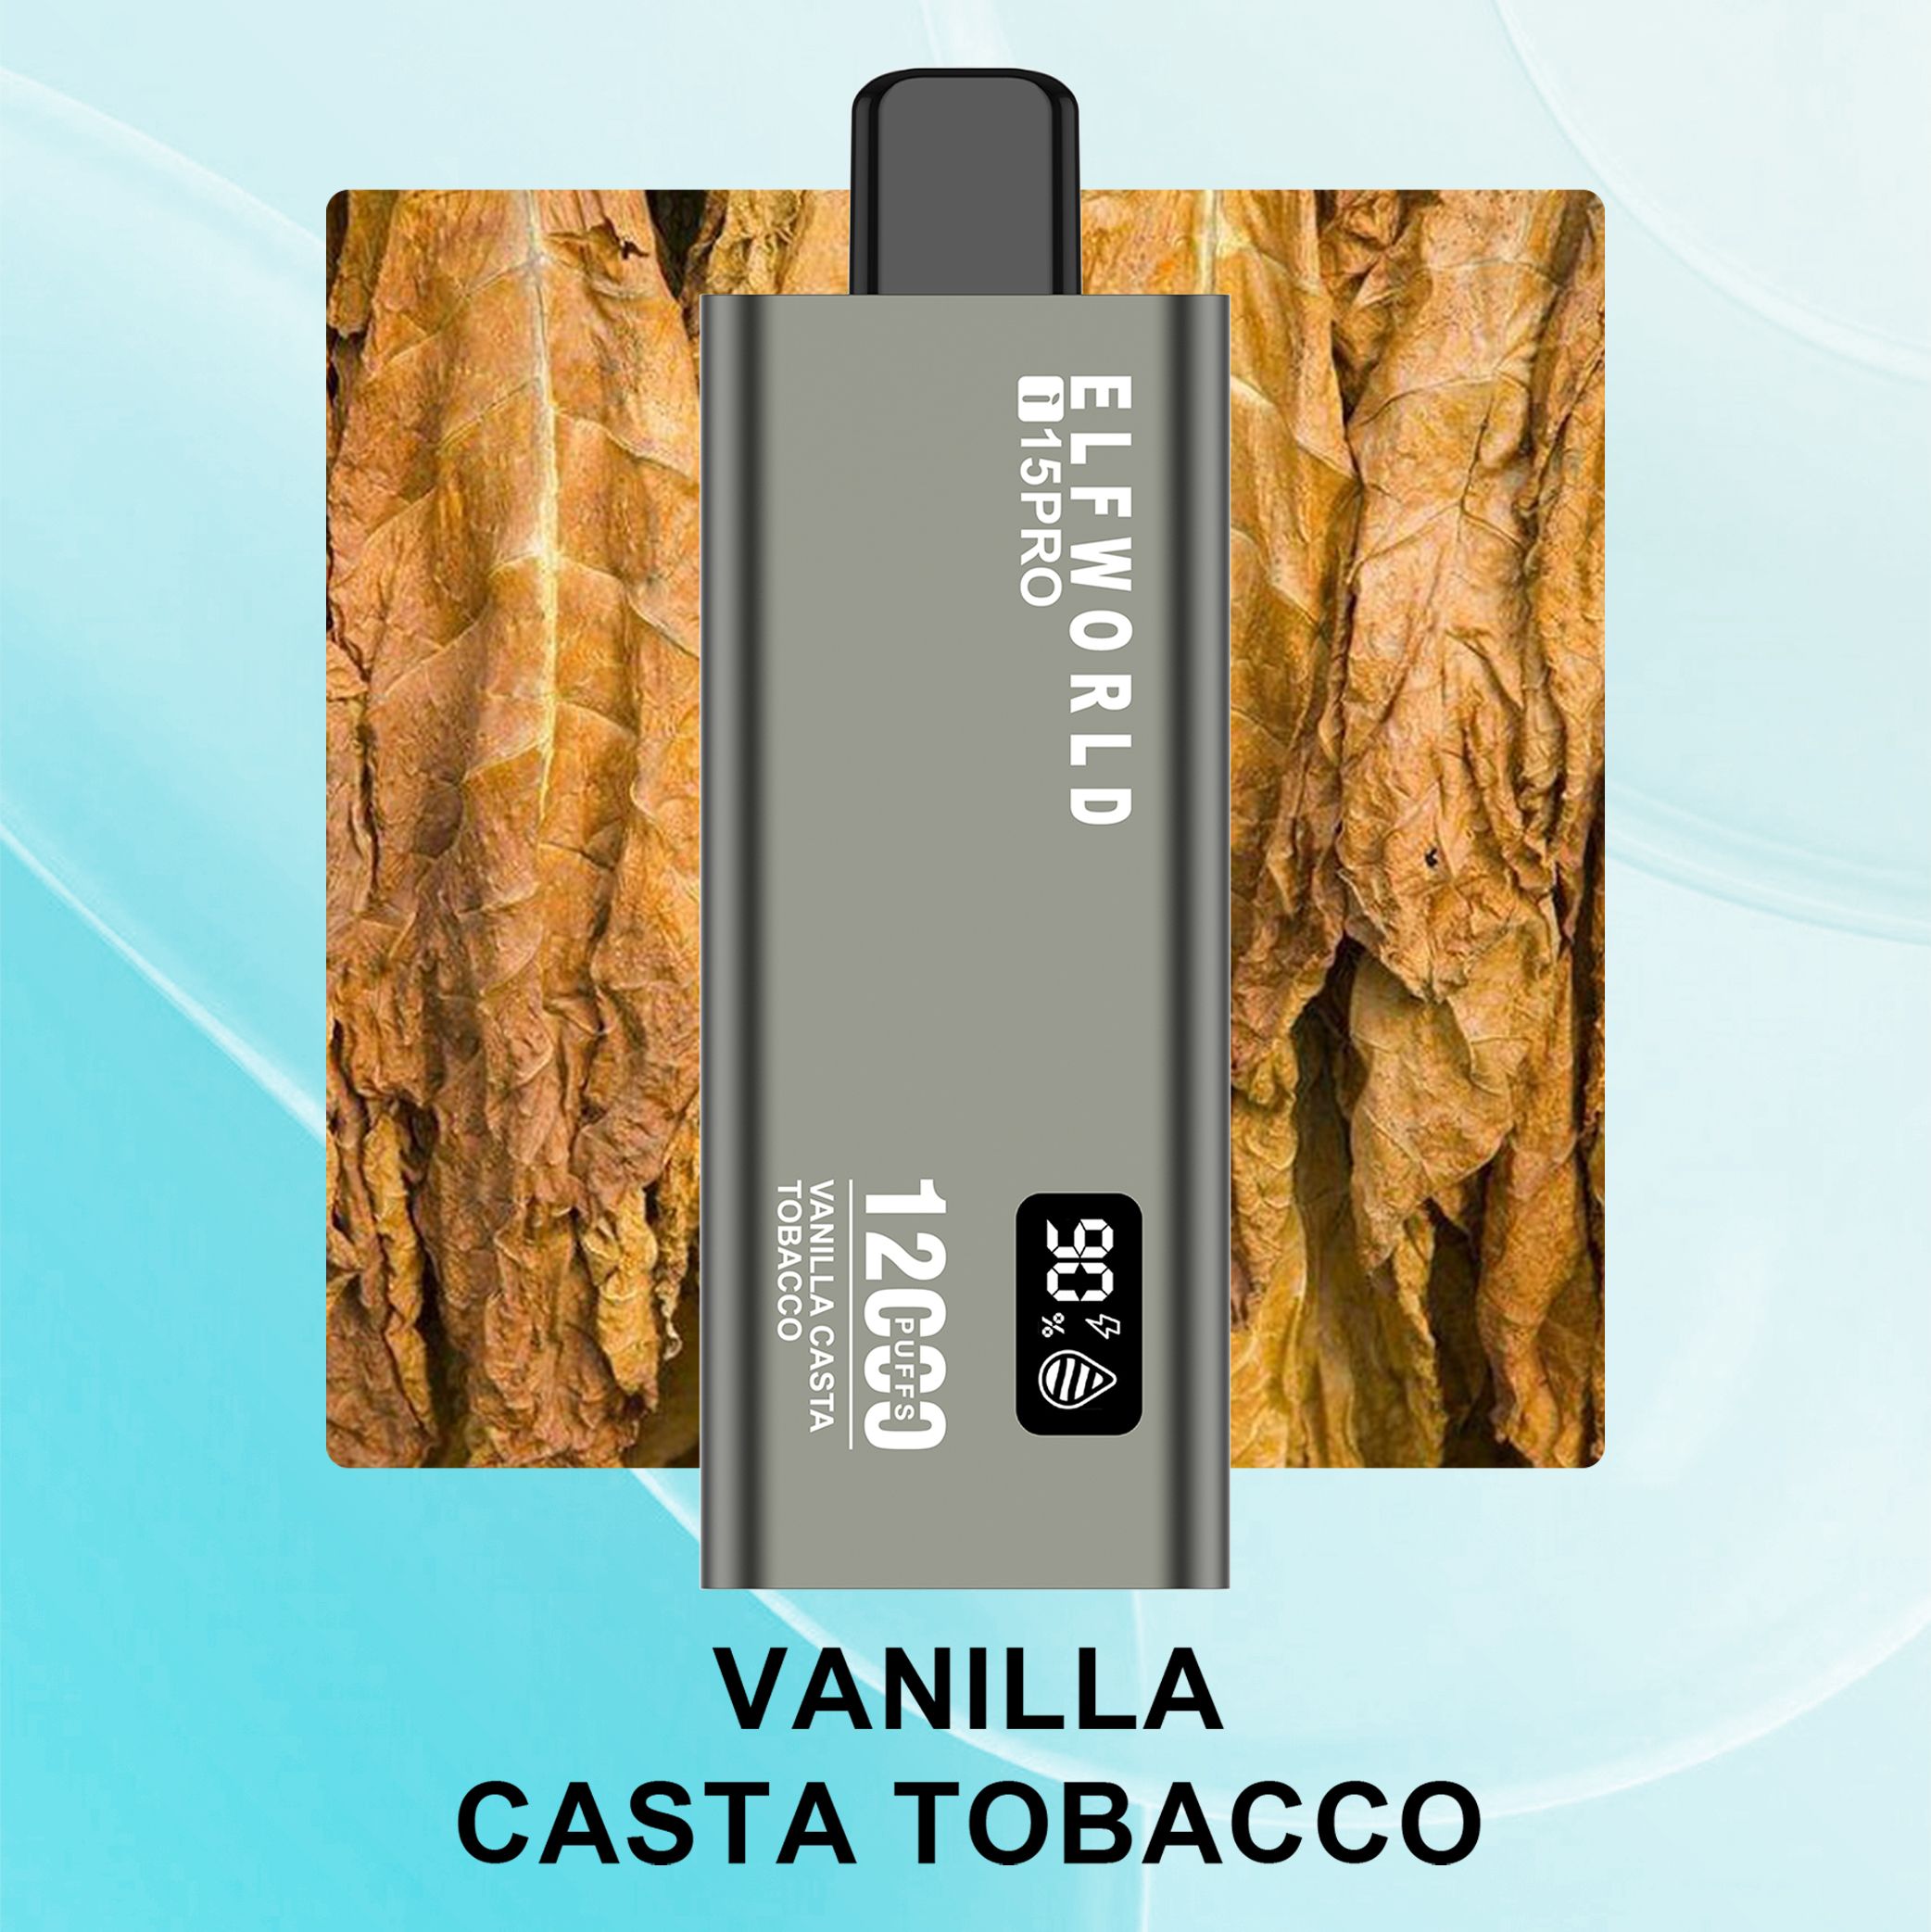 4.Tabacco Casta Alla Vaniglia